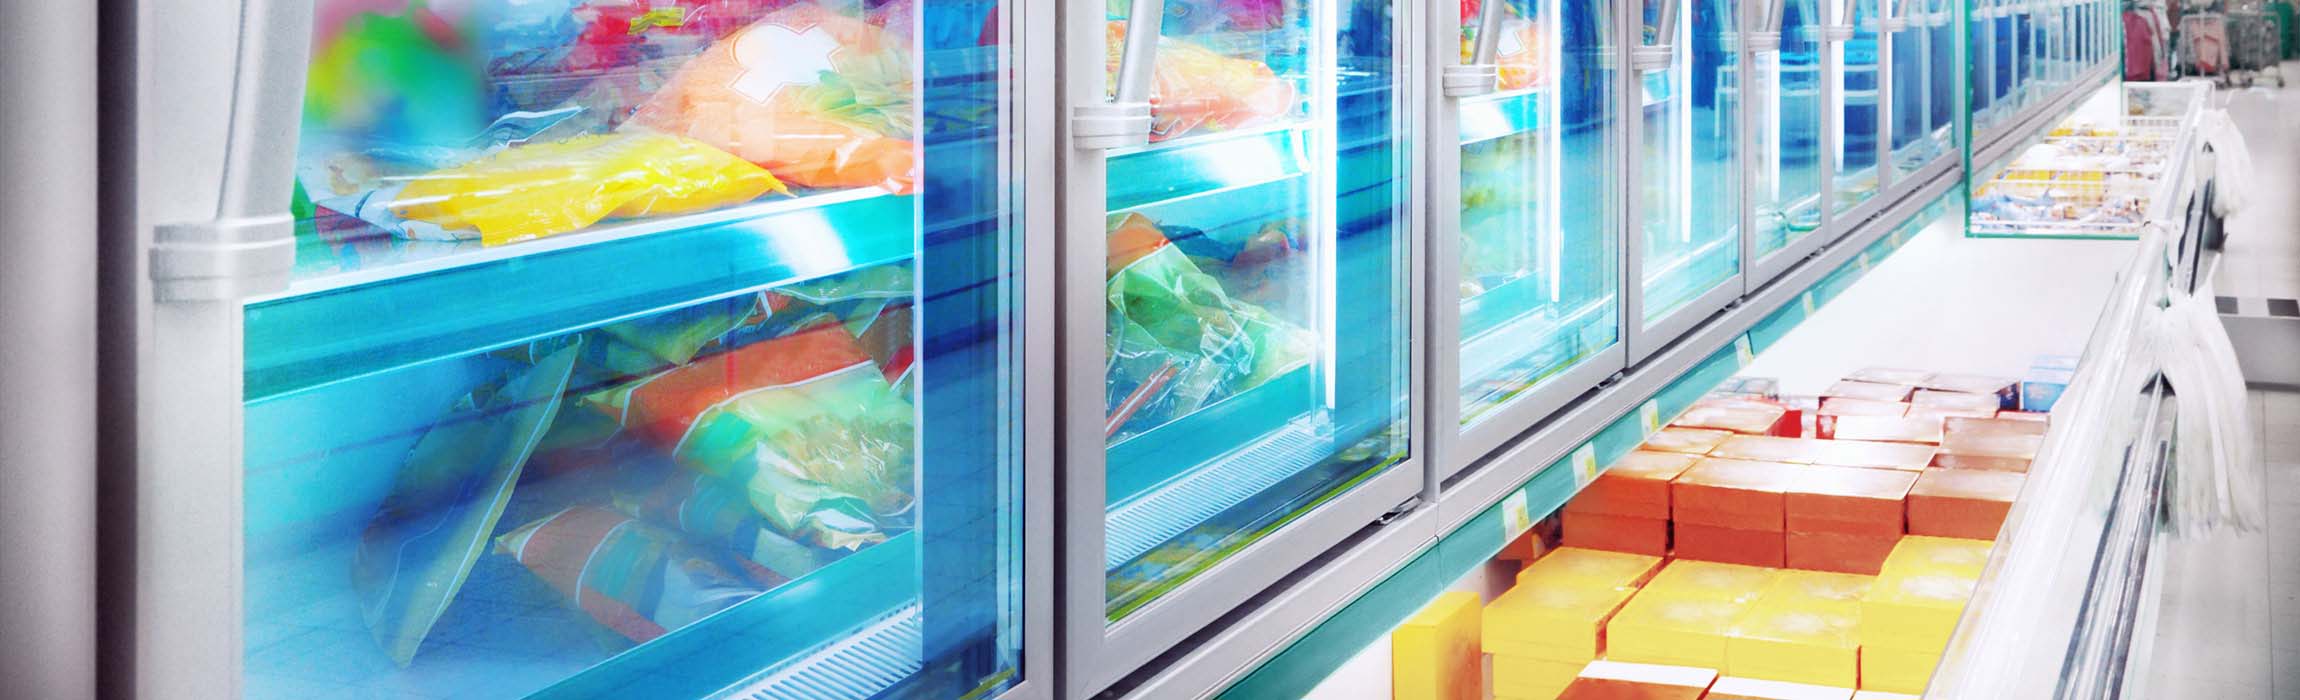 Tiefkühllogistik: Corona-Auswirkungen treiben Lagerautomatisierung